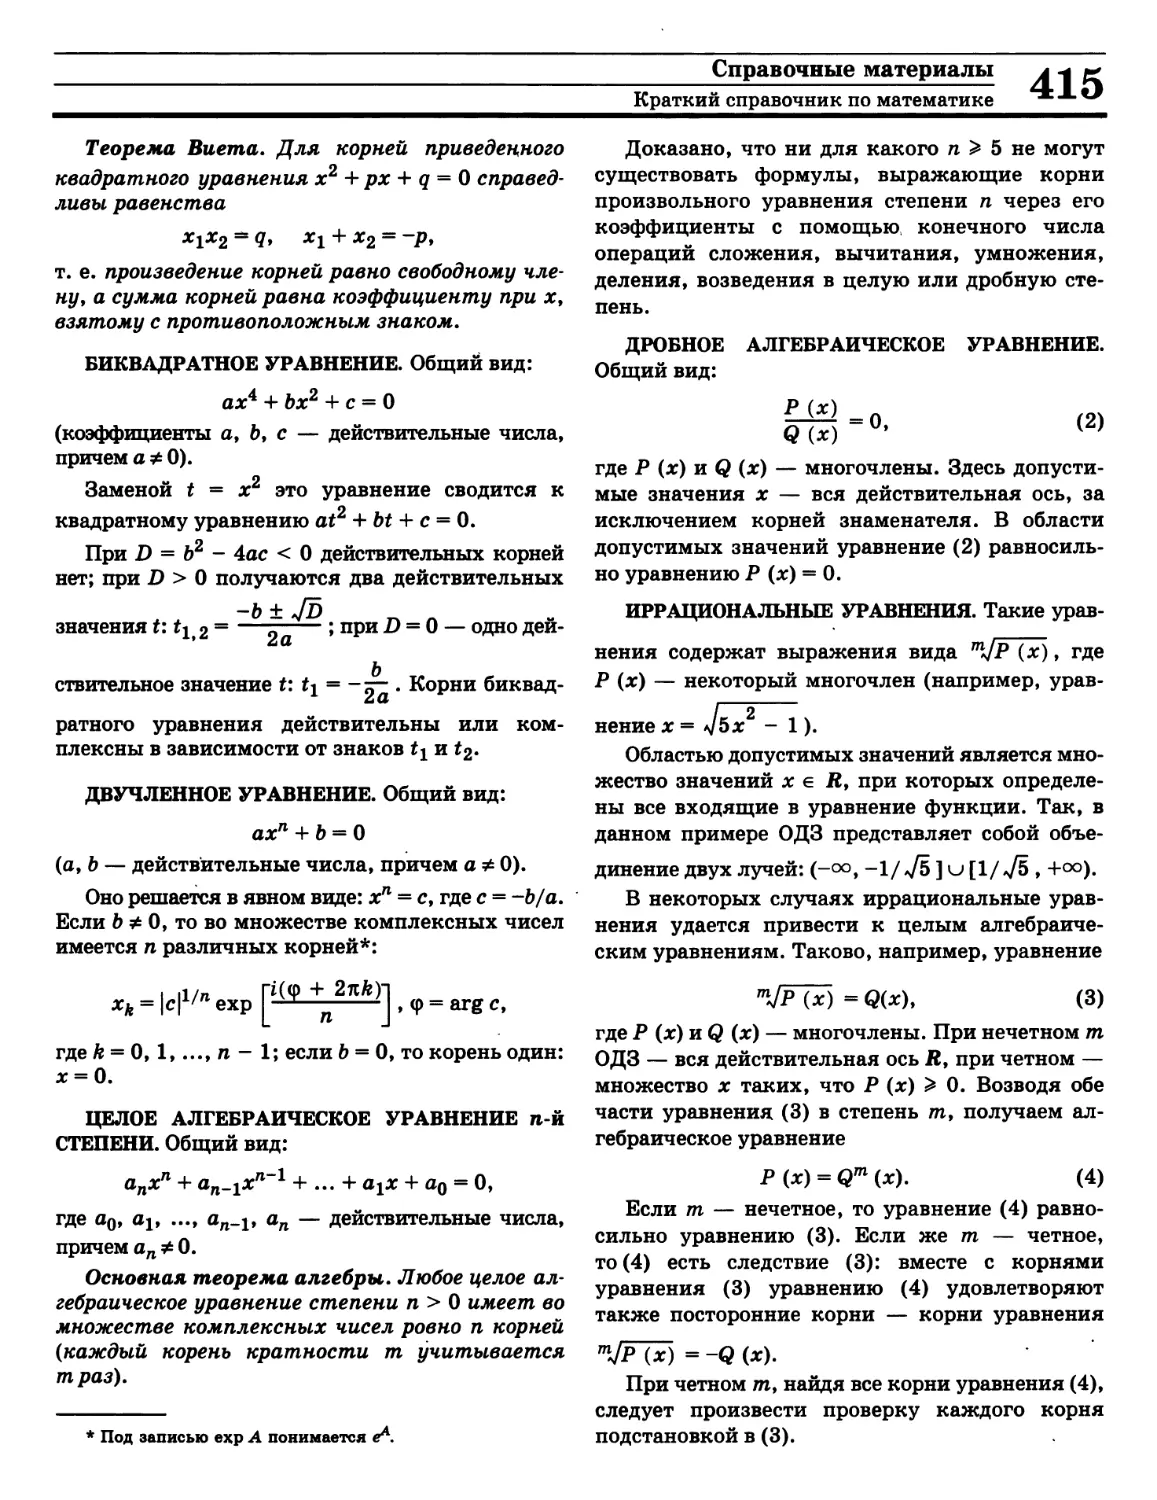 Теорема Виета
Теорема основная алгебры
Уравнение биквадратное
Уравнение двучленное
Уравнение дробное алгебраическое
Уравнение иррациональное
Уравнение целое алгебраическое